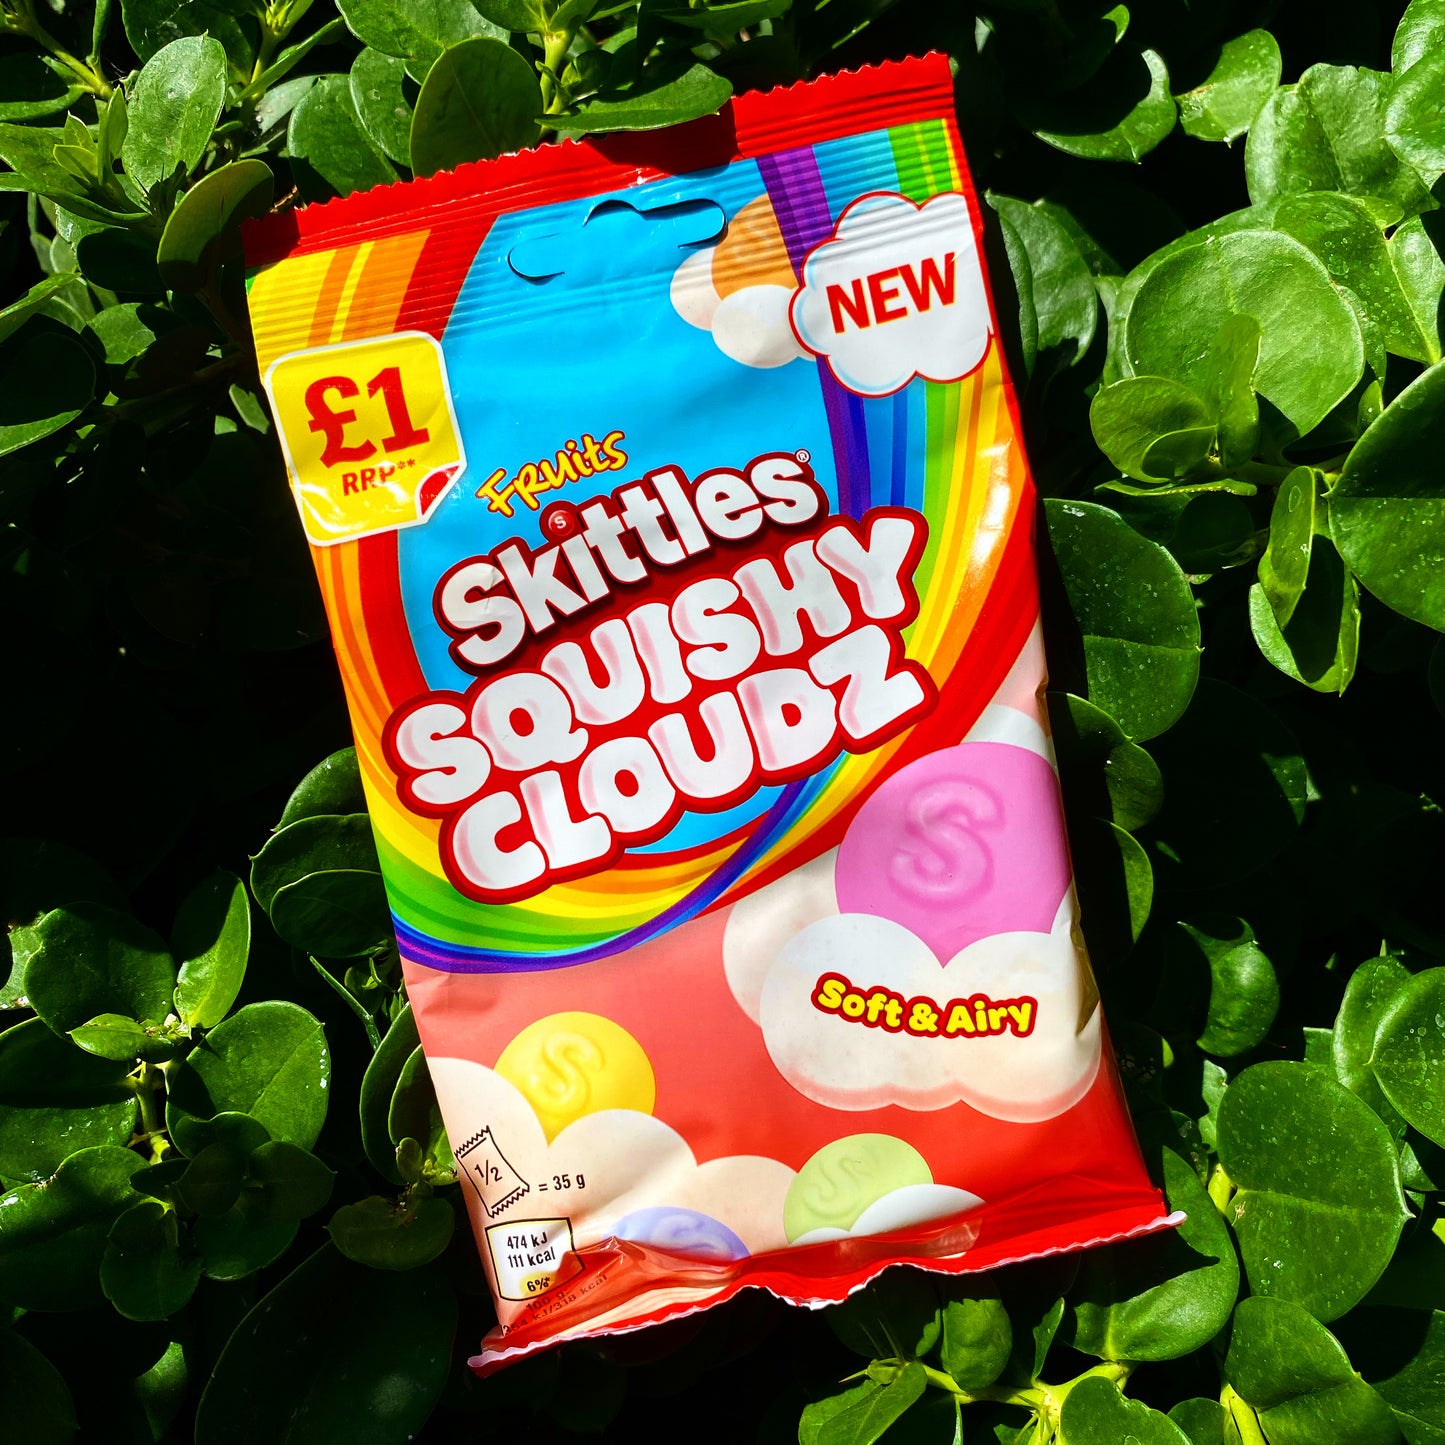 Skittles Squishy Cloudz Fruits (UK)